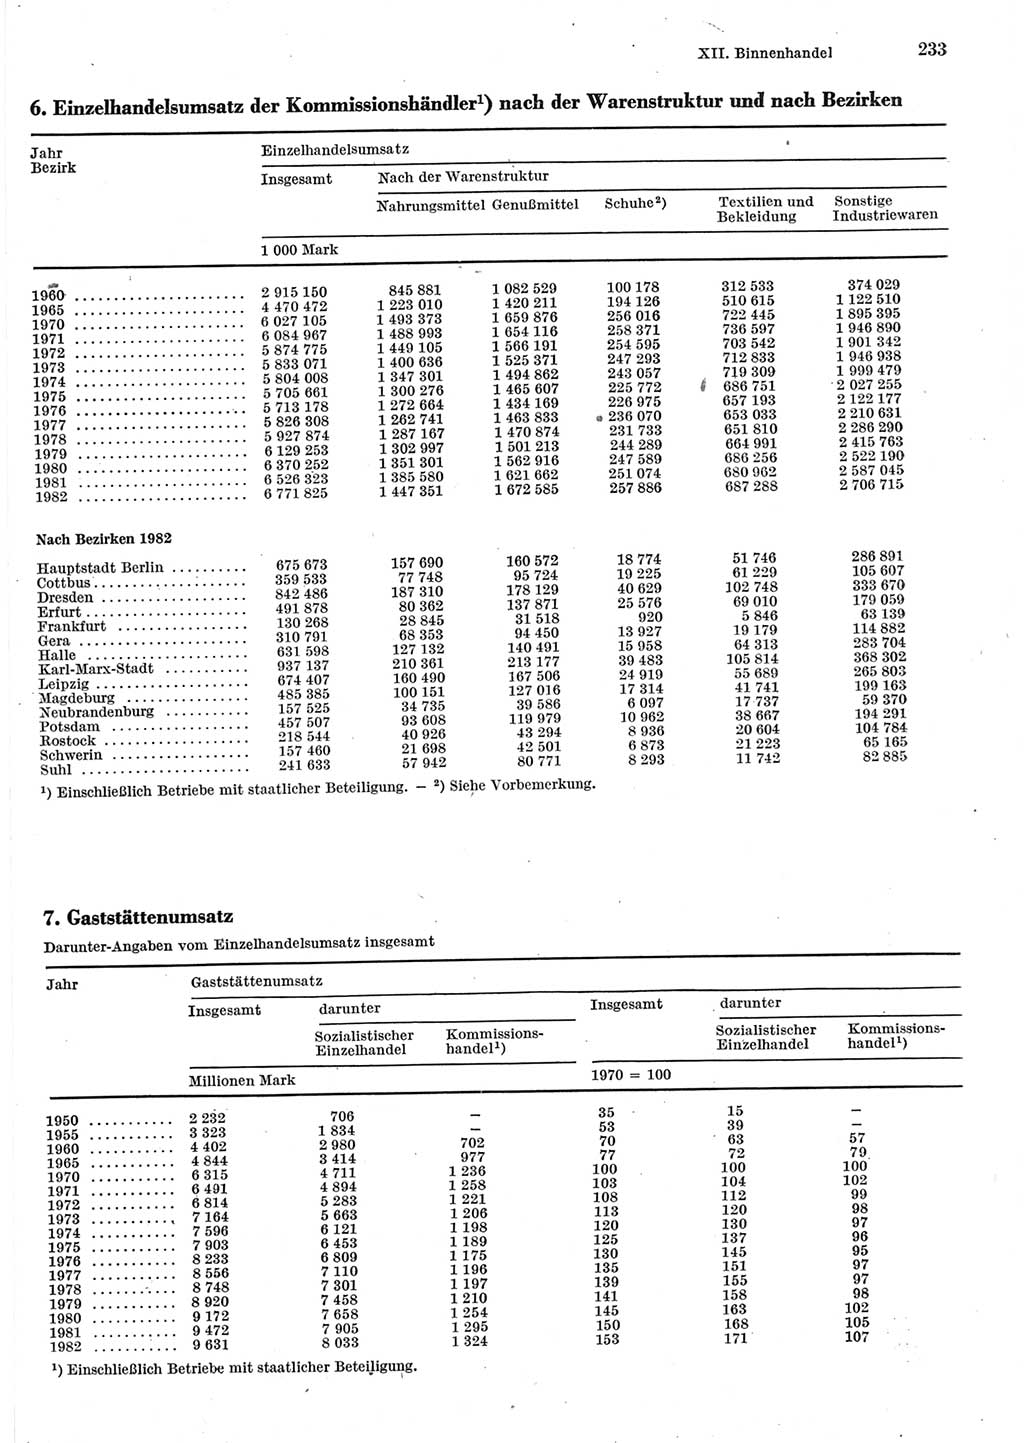 Statistisches Jahrbuch der Deutschen Demokratischen Republik (DDR) 1983, Seite 233 (Stat. Jb. DDR 1983, S. 233)